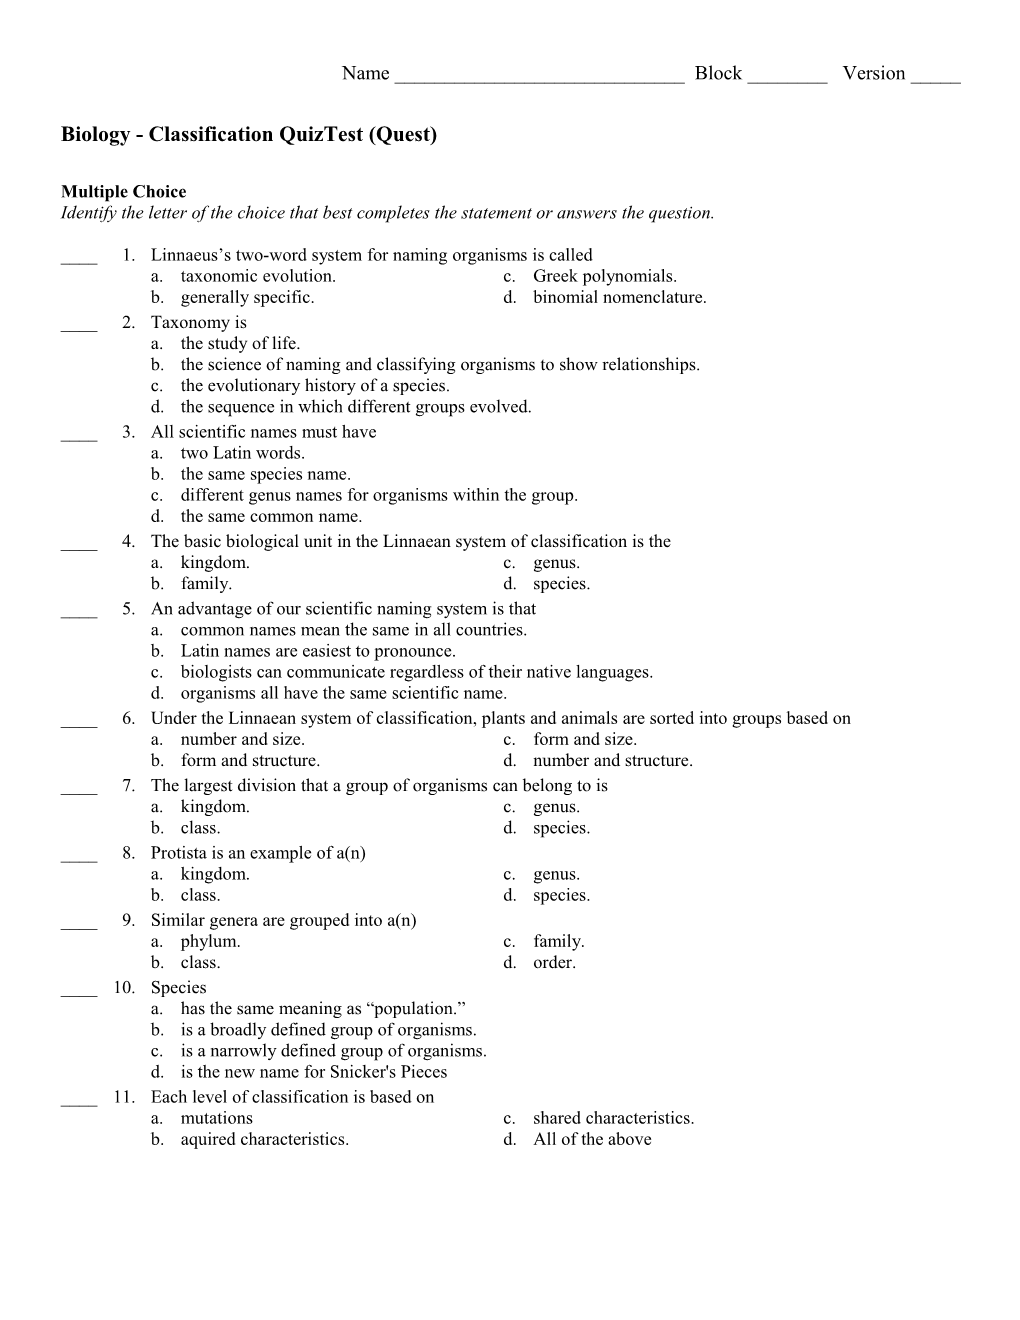 Biology - Classification Quiztest (Quest)